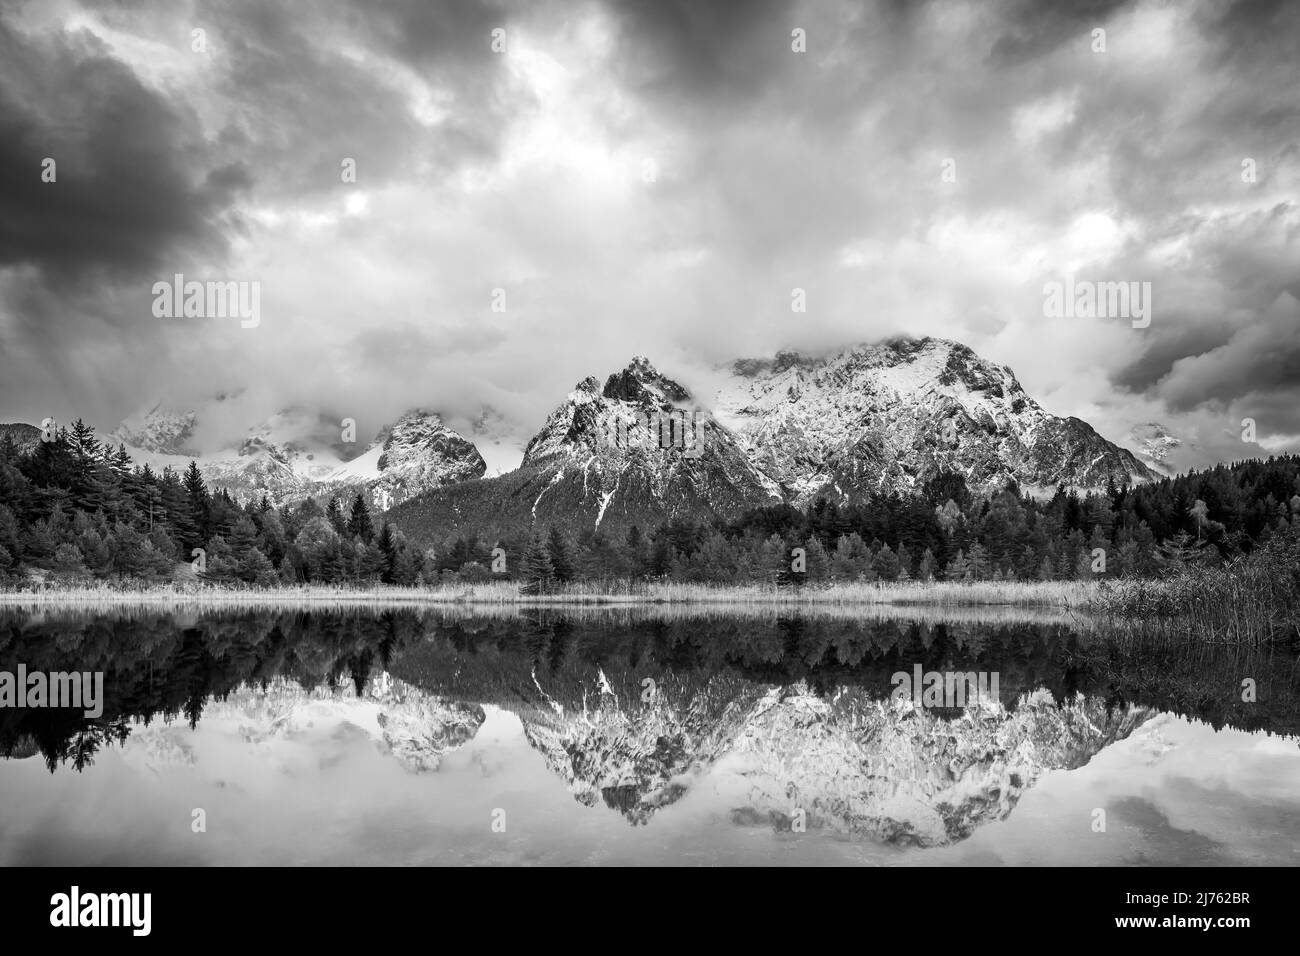 Die Karwendelberge spiegeln sich im Luttensee bei Mittenwald. Frischer Schnee und atmosphärische Wolken umrahmen die Berge. Die schwarz-weiße Umwandlung lässt den Bergrücken massiv wirken. Stockfoto